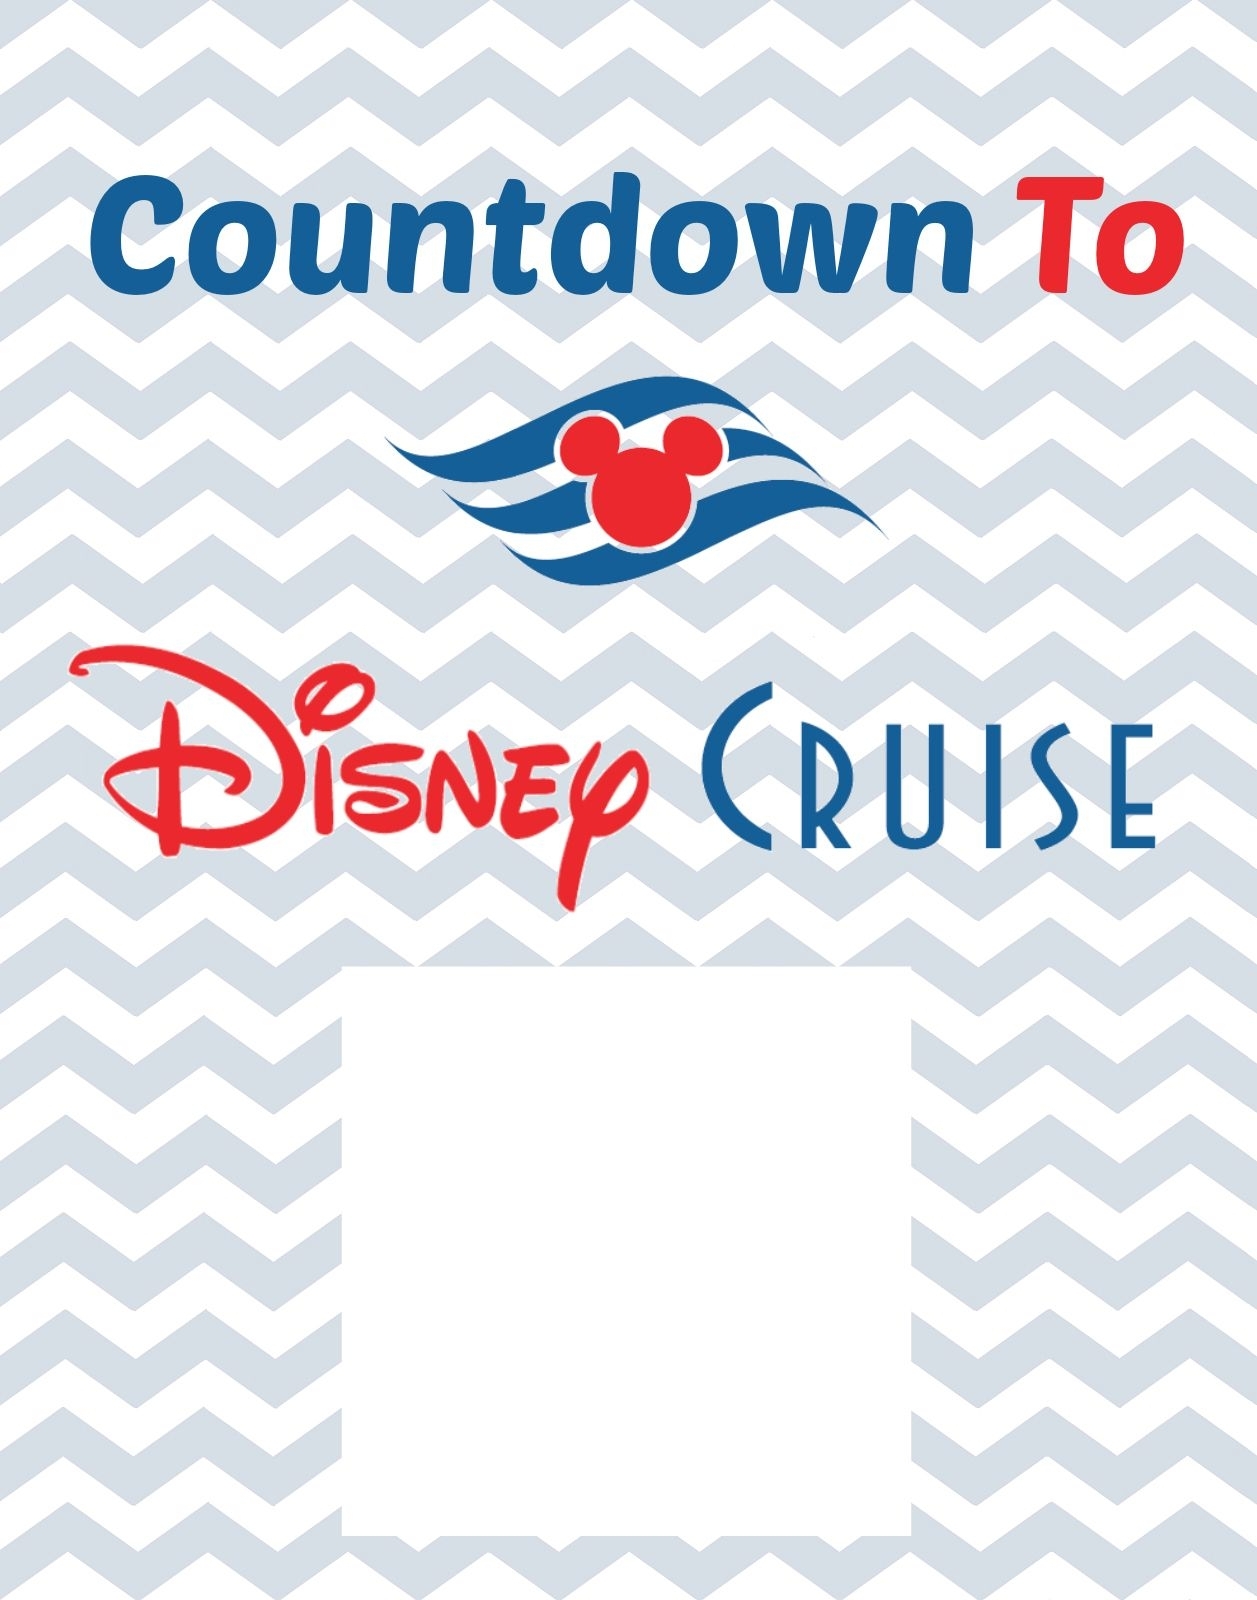 Countdown To Disney Cruise Free Printable | Disney Cruise | Disney inside Disney Cruise Countdown Calendar Printable